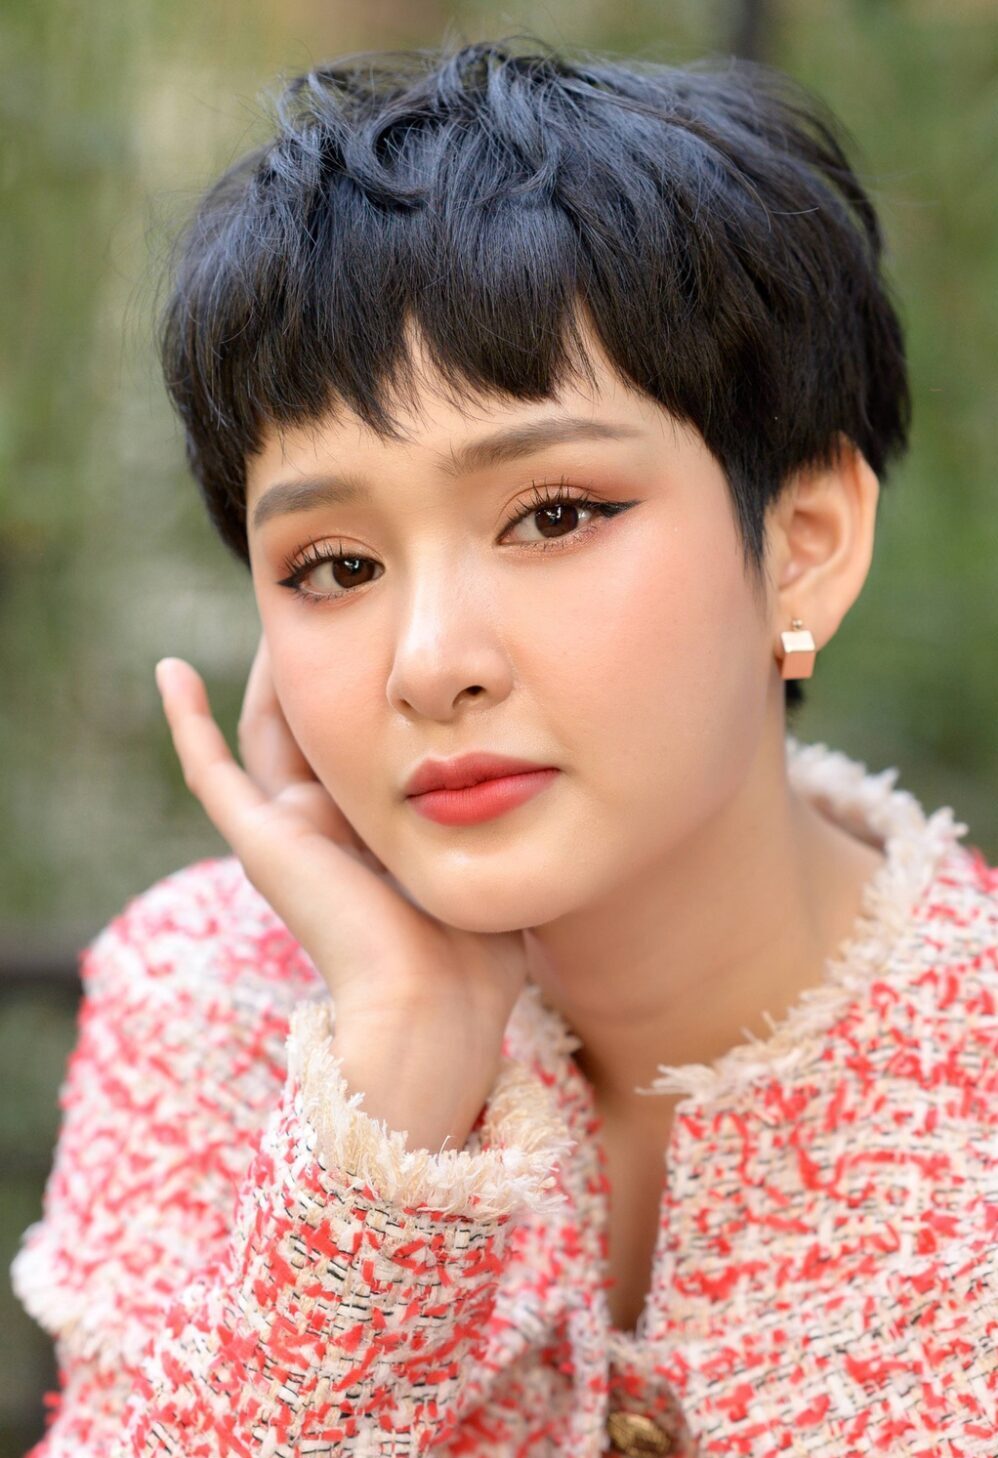 Chân dung ca sĩ Hiền Hồ - Nữ ca sĩ nổi tiếng Showbiz Việt